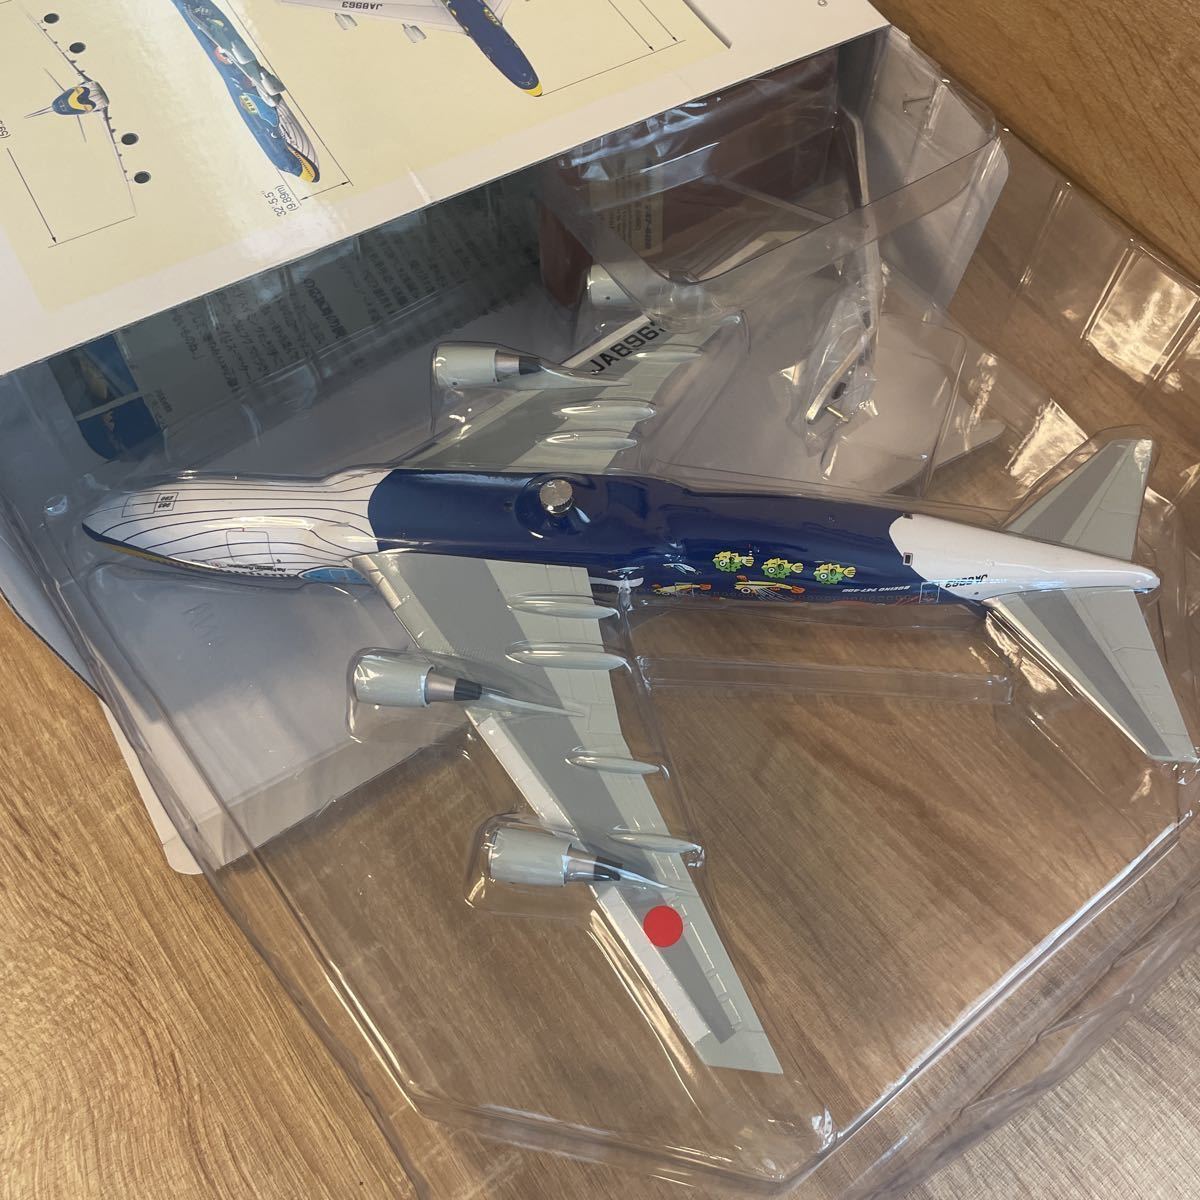 全日空商事 1/200 ANA マリンジャンボ ボーイング 747-400 の商品詳細